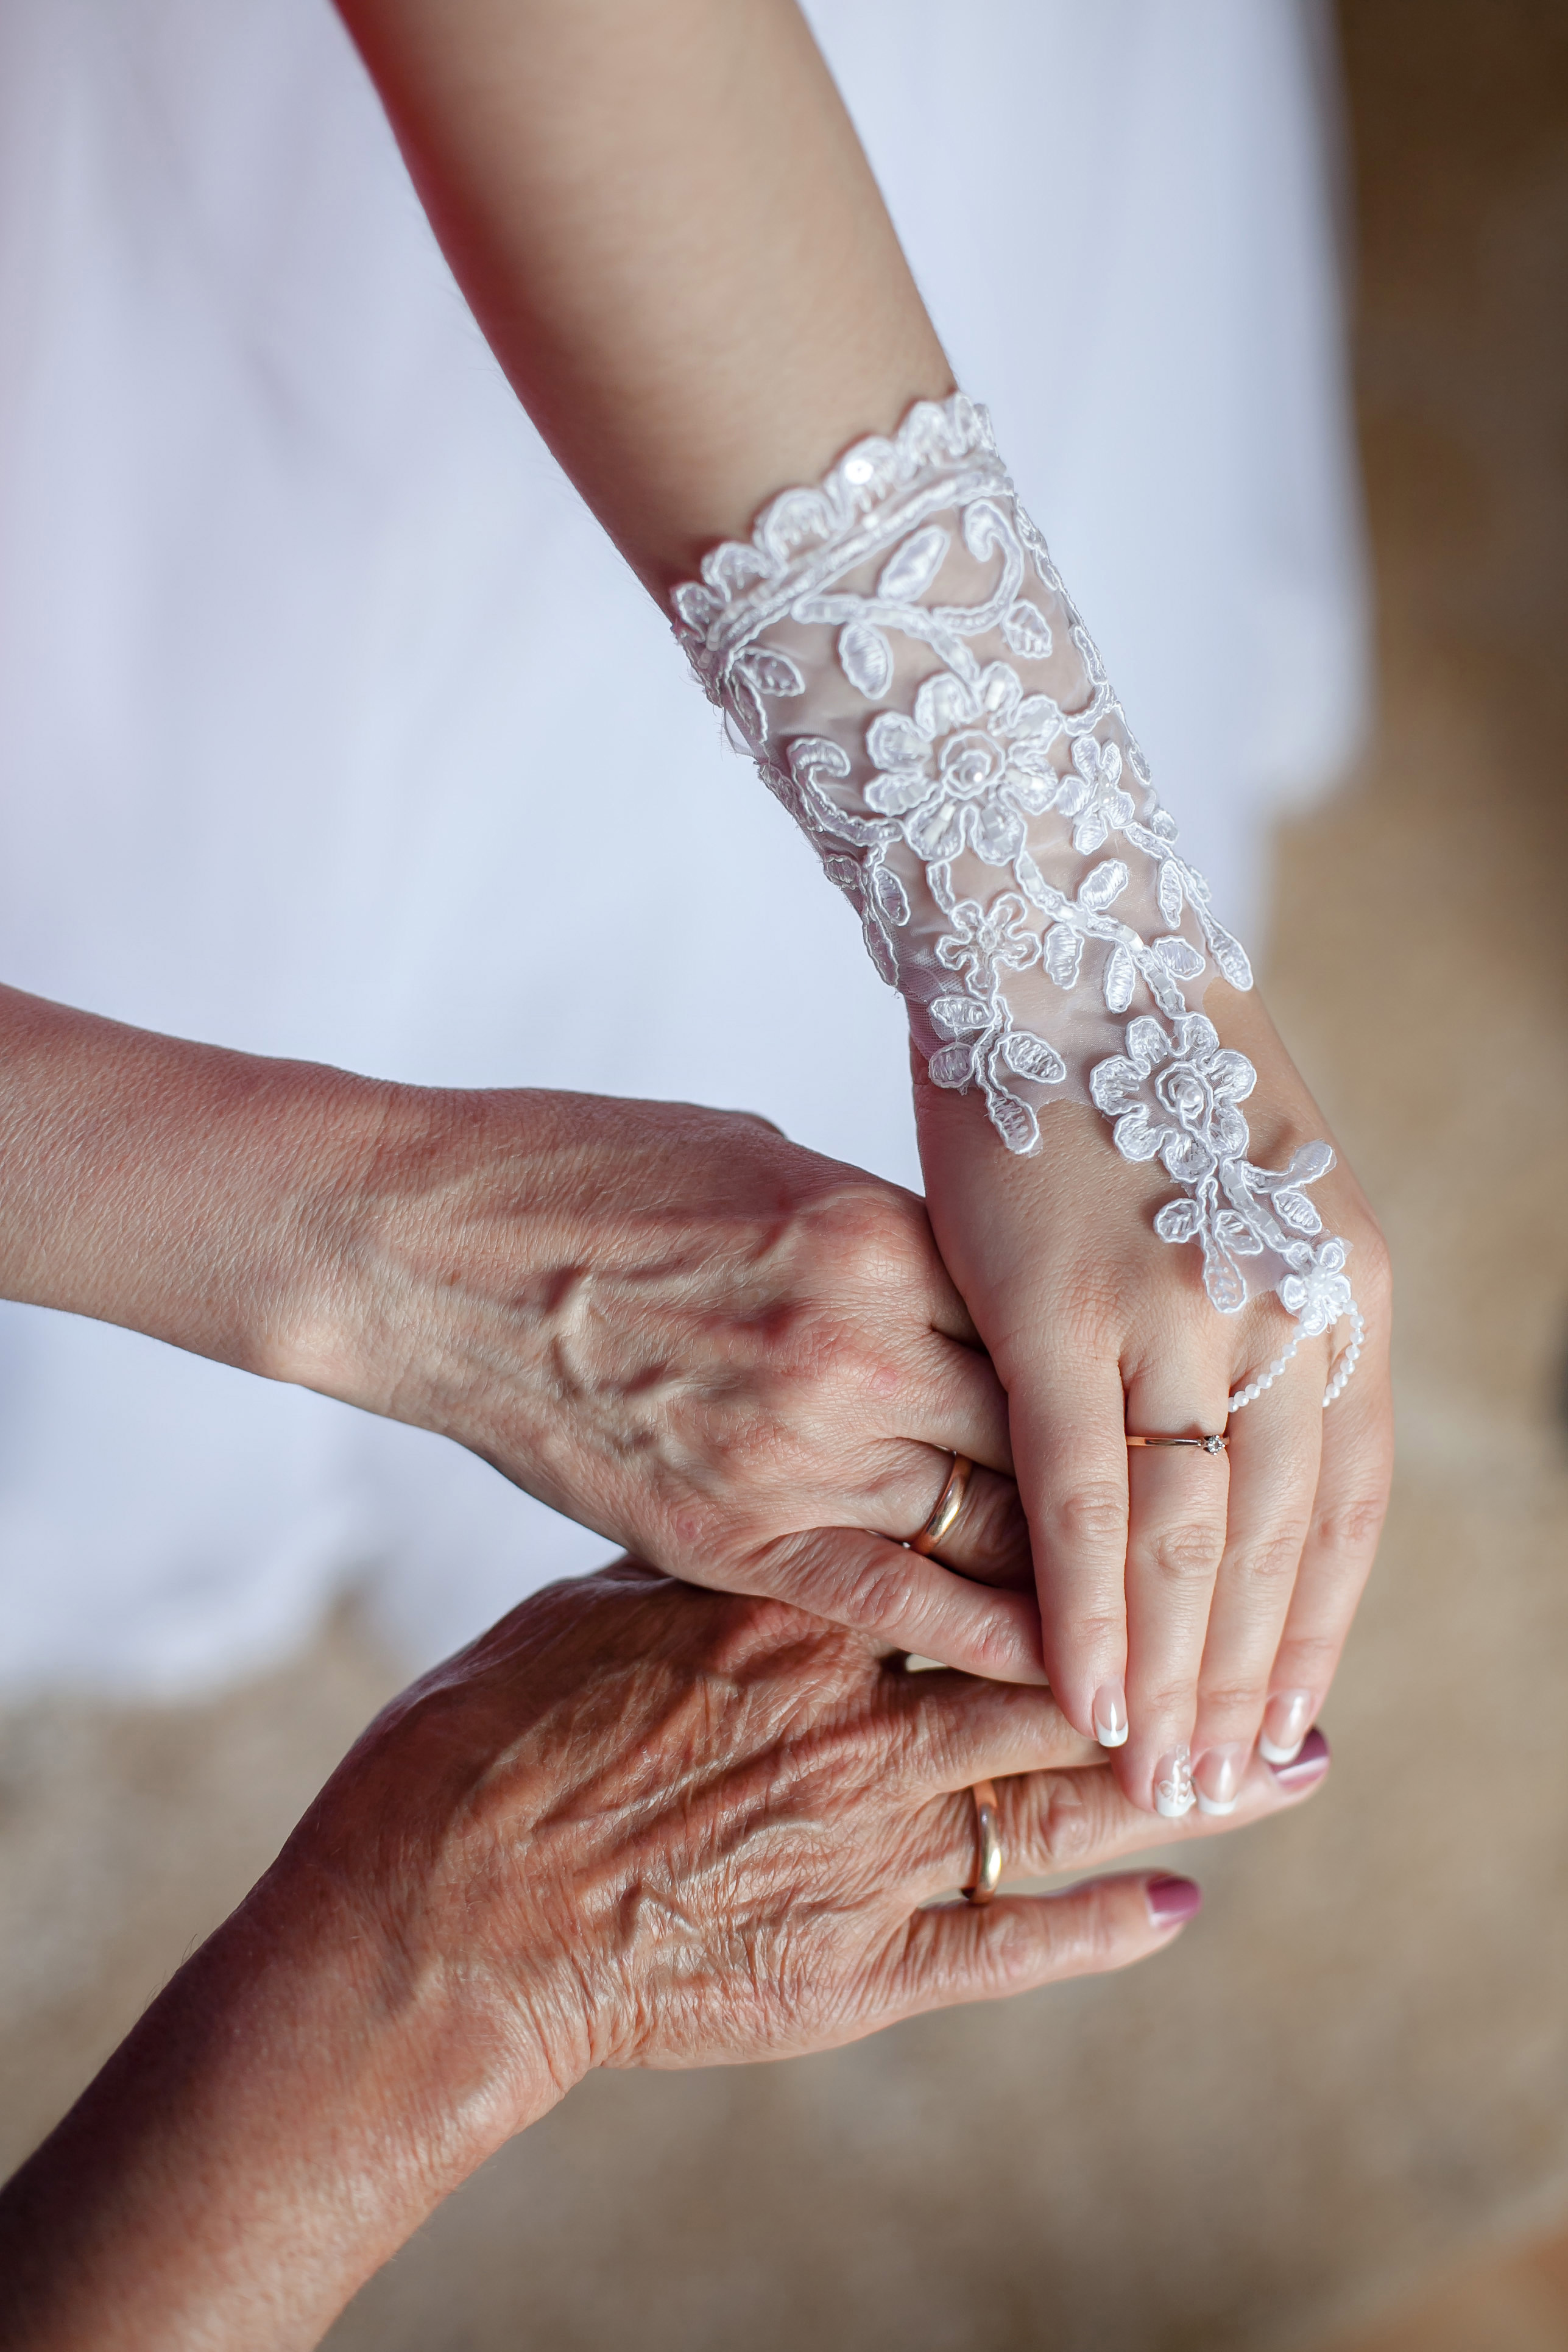 Trois mains se tenant l'une l'autre lors d'un mariage | Source : Shutterstock